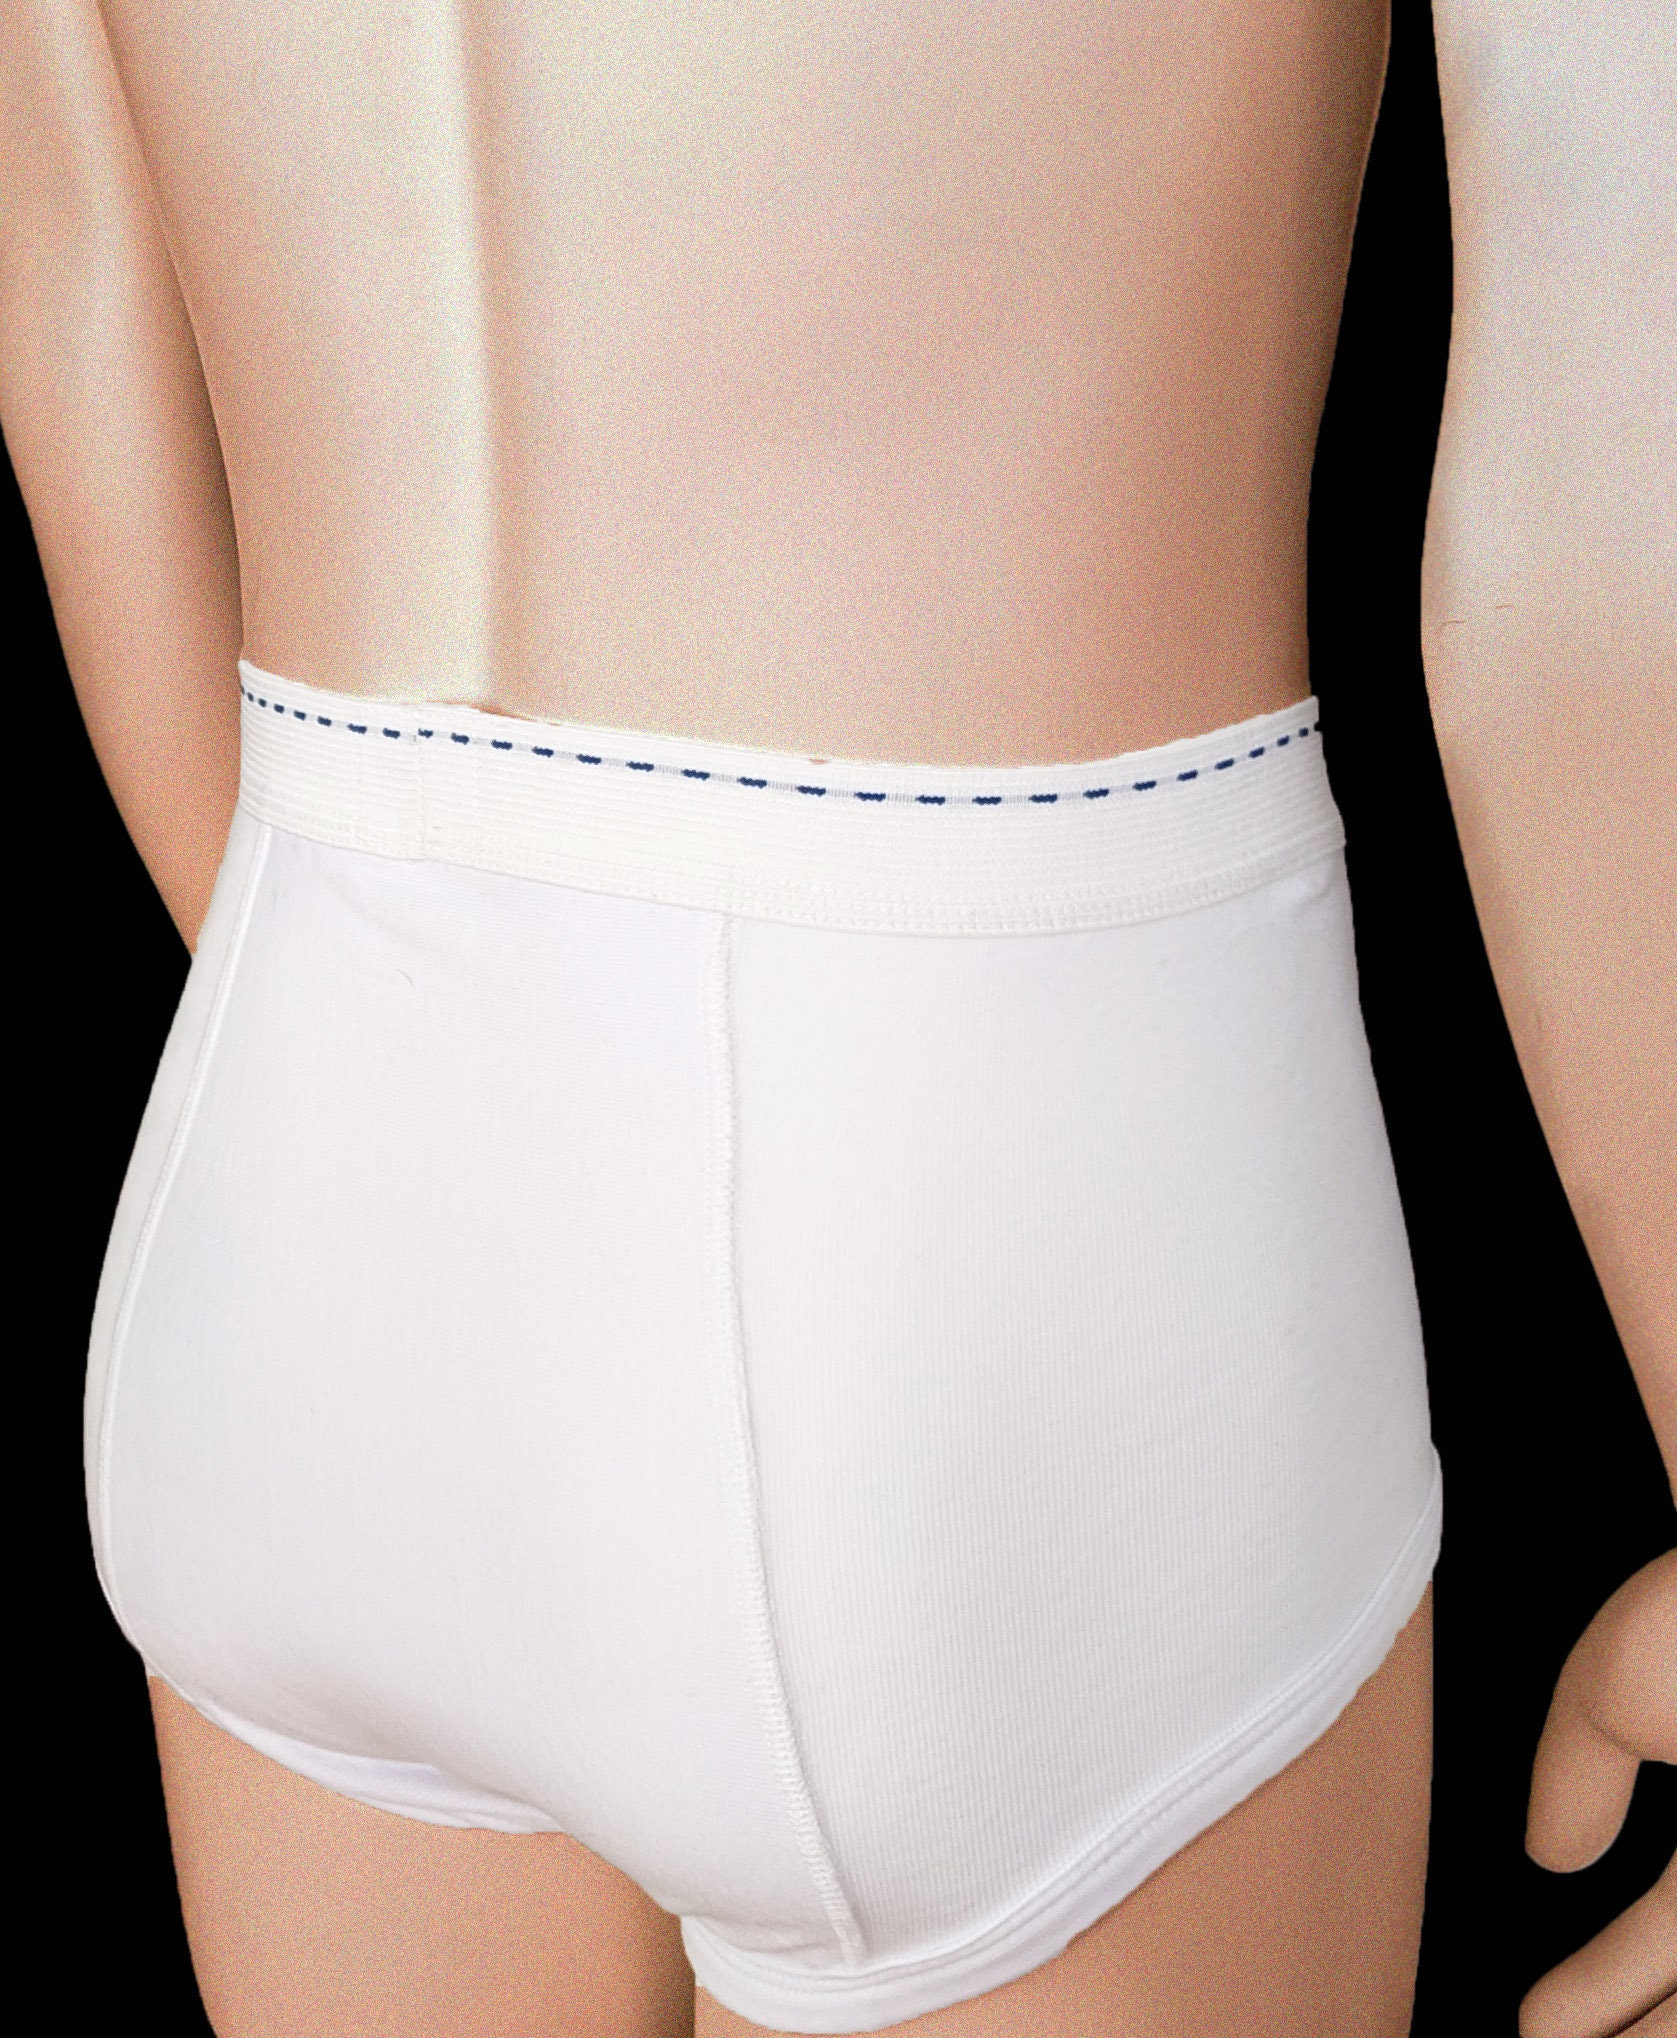 Buy Wedgie Underwear Online In India -  India